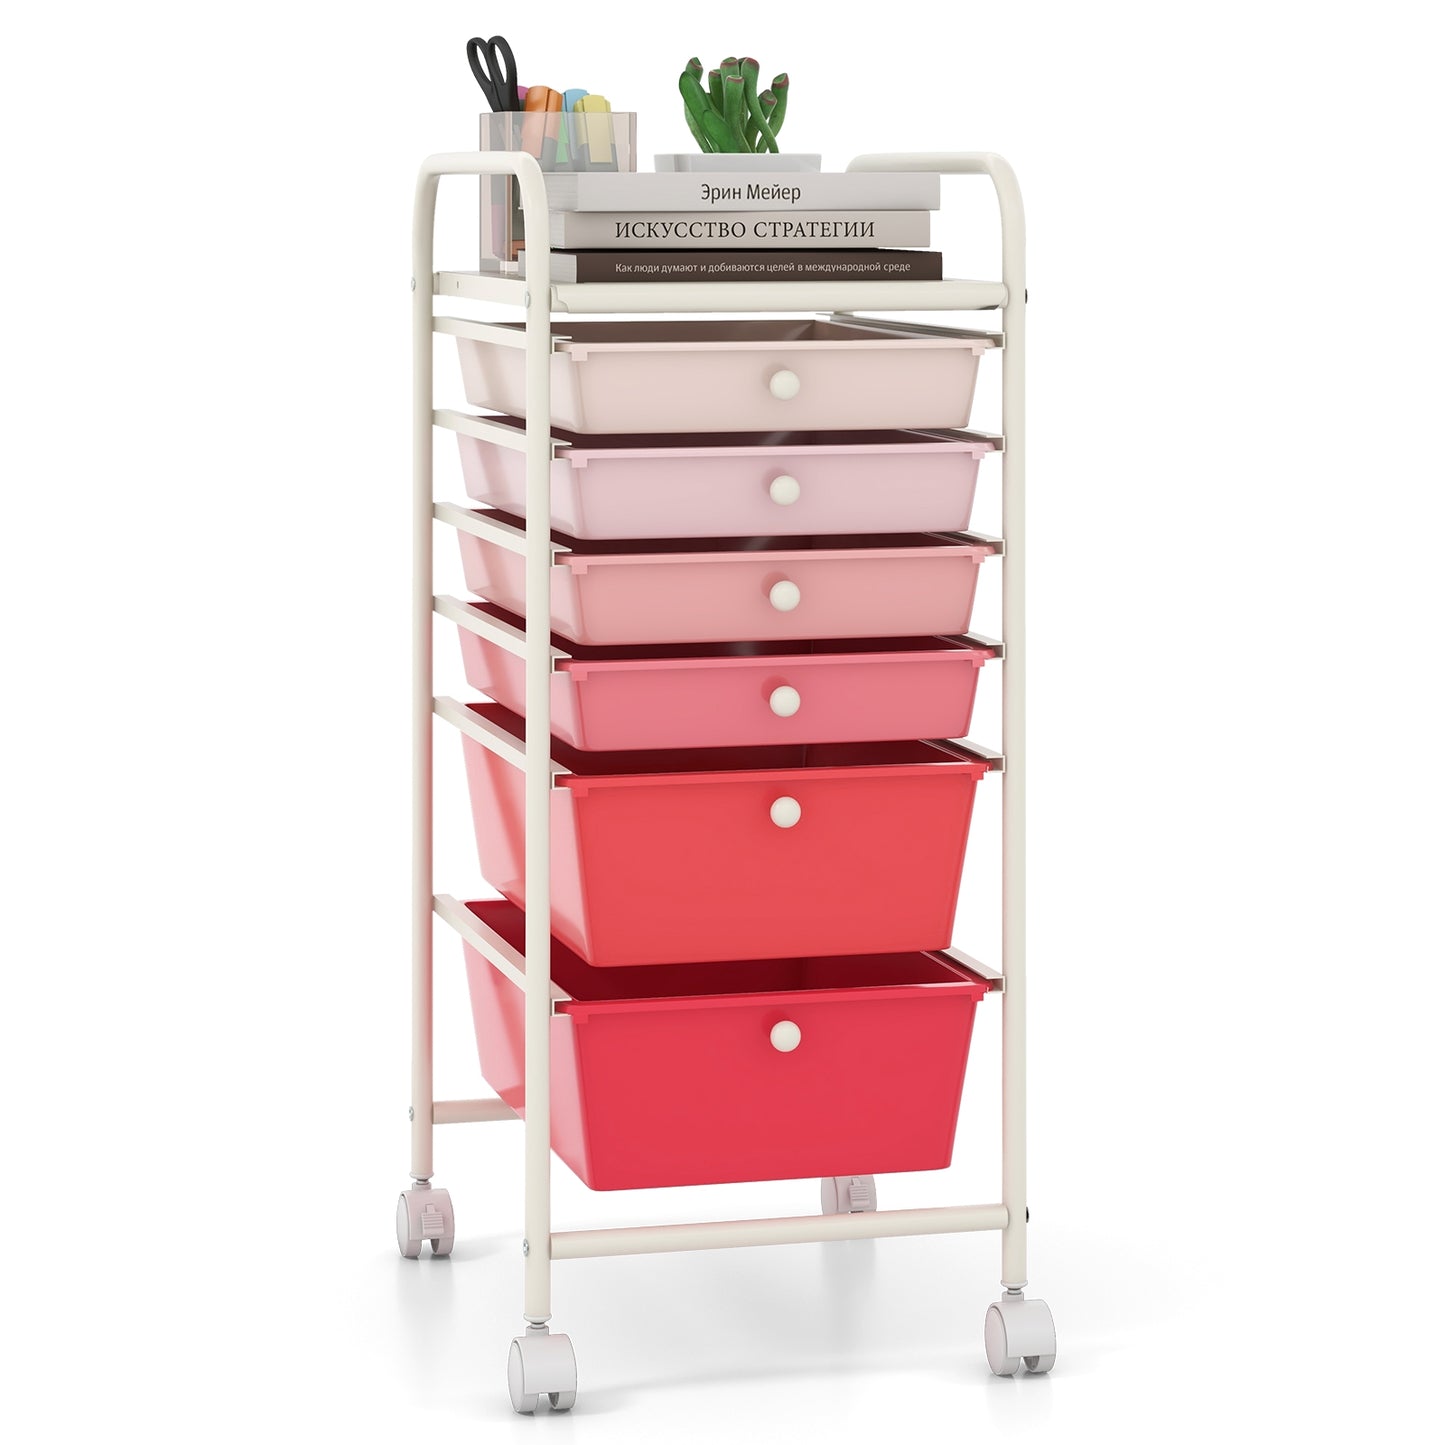 6 Drawers Rolling Storage Cart Organizer-Pink